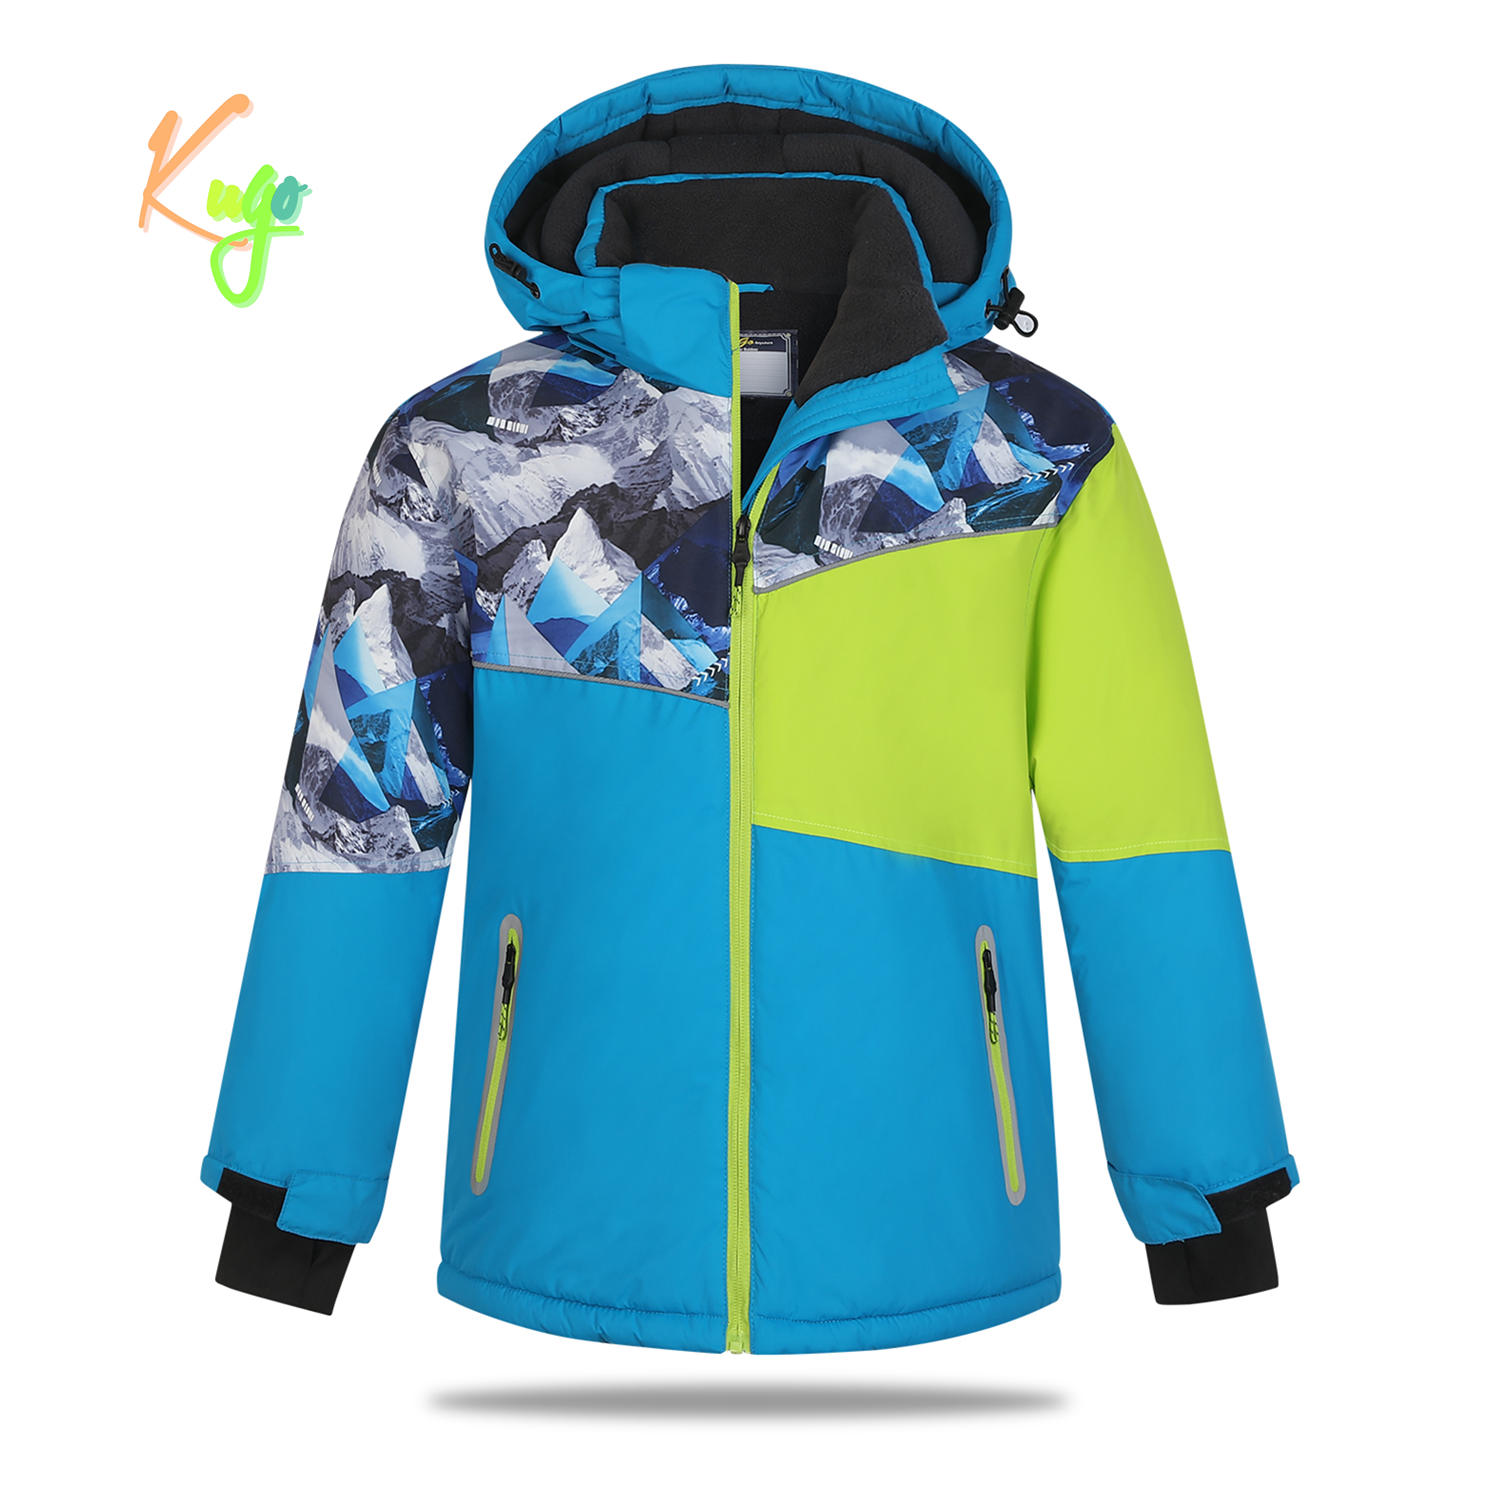 Chlapecká zimní bunda - KUGO PB3890, tyrkysová Barva: Tyrkysová, Velikost: 146